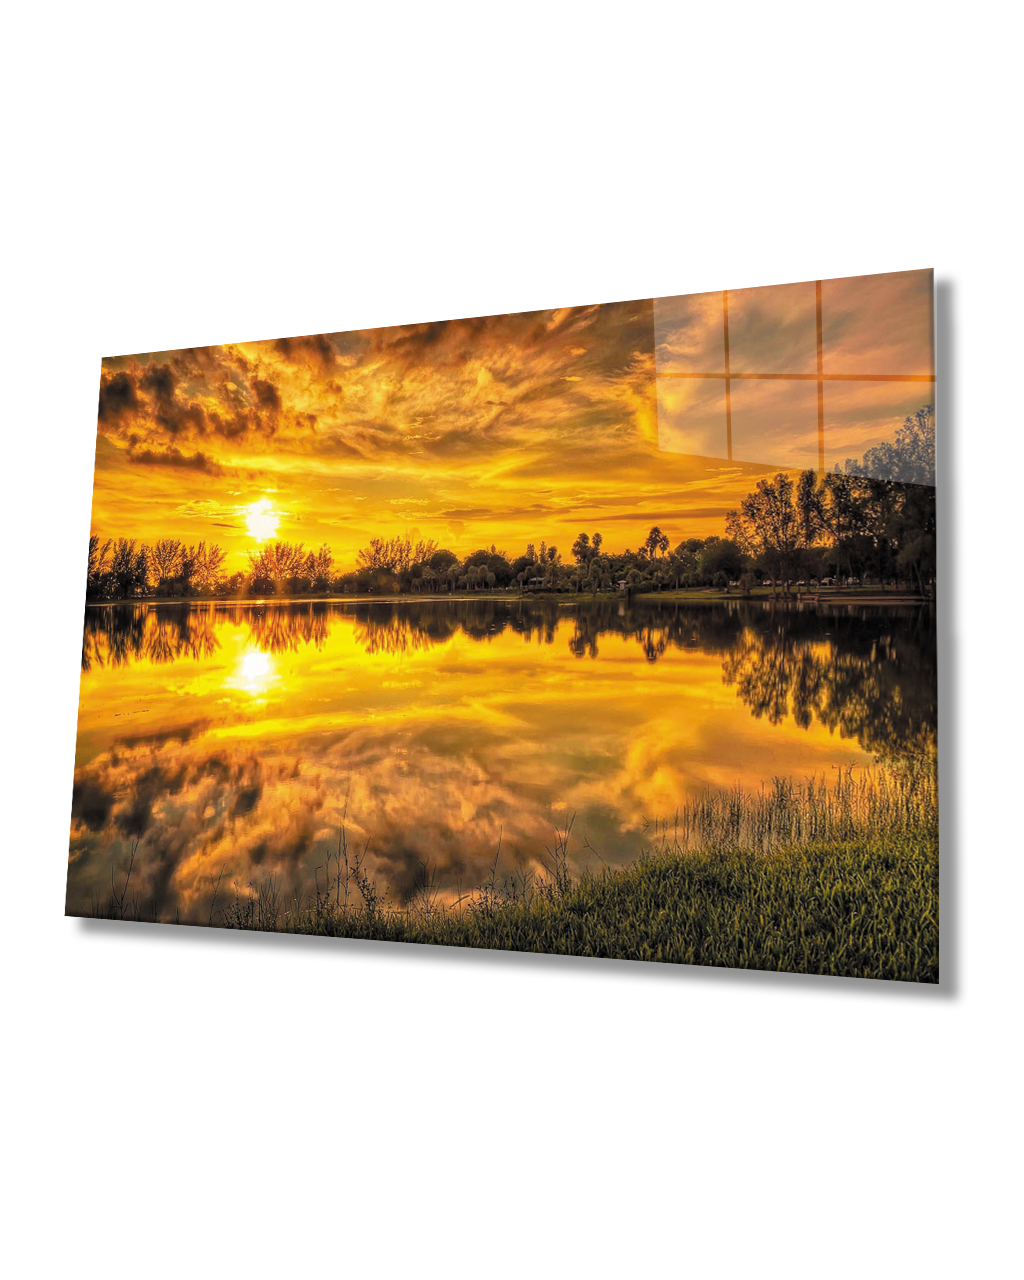 Gün Batımı Sunset Reflection Glass Table 4mm Durable Tempered Glass Cam Tablo  4mm Dayanıklı Temperli Cam